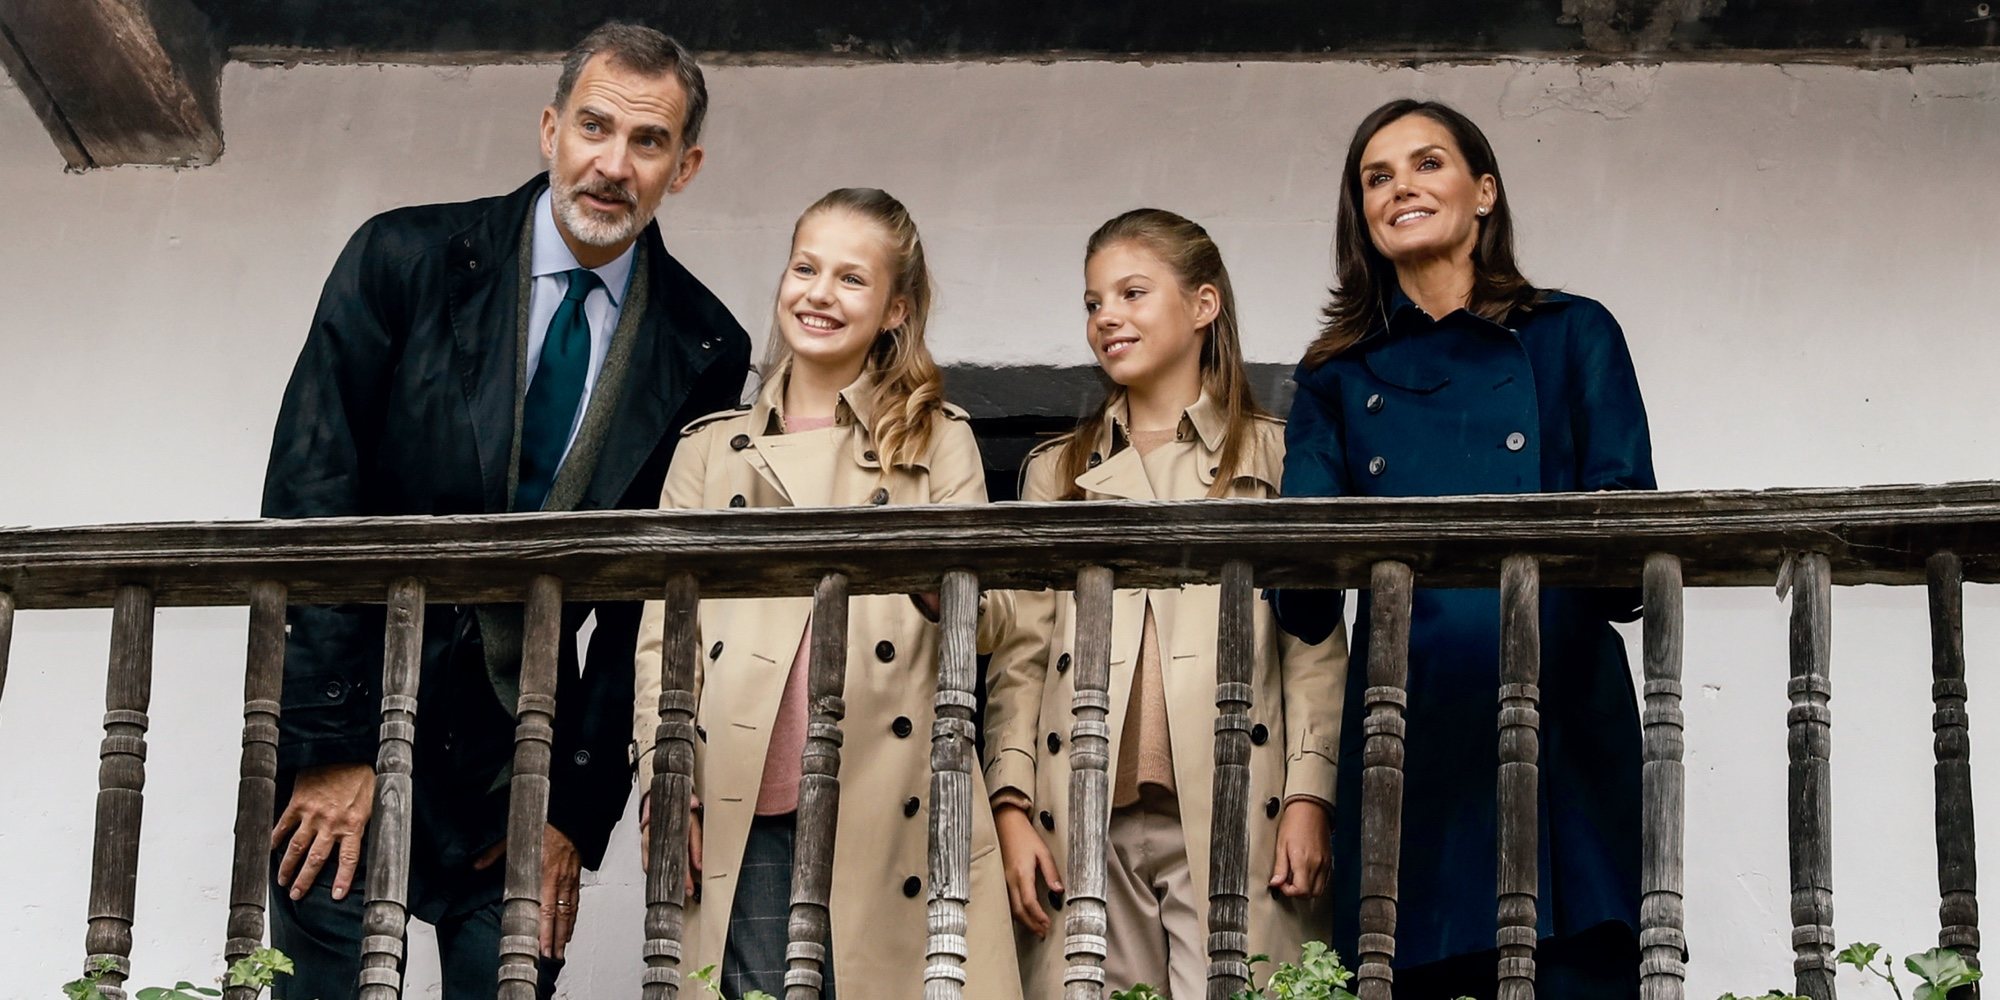 Los Reyes Felipe y Letizia, la Princesa Leonor y la Infanta Sofía felicitan la Navidad 2019 recordando su paso por Asturias